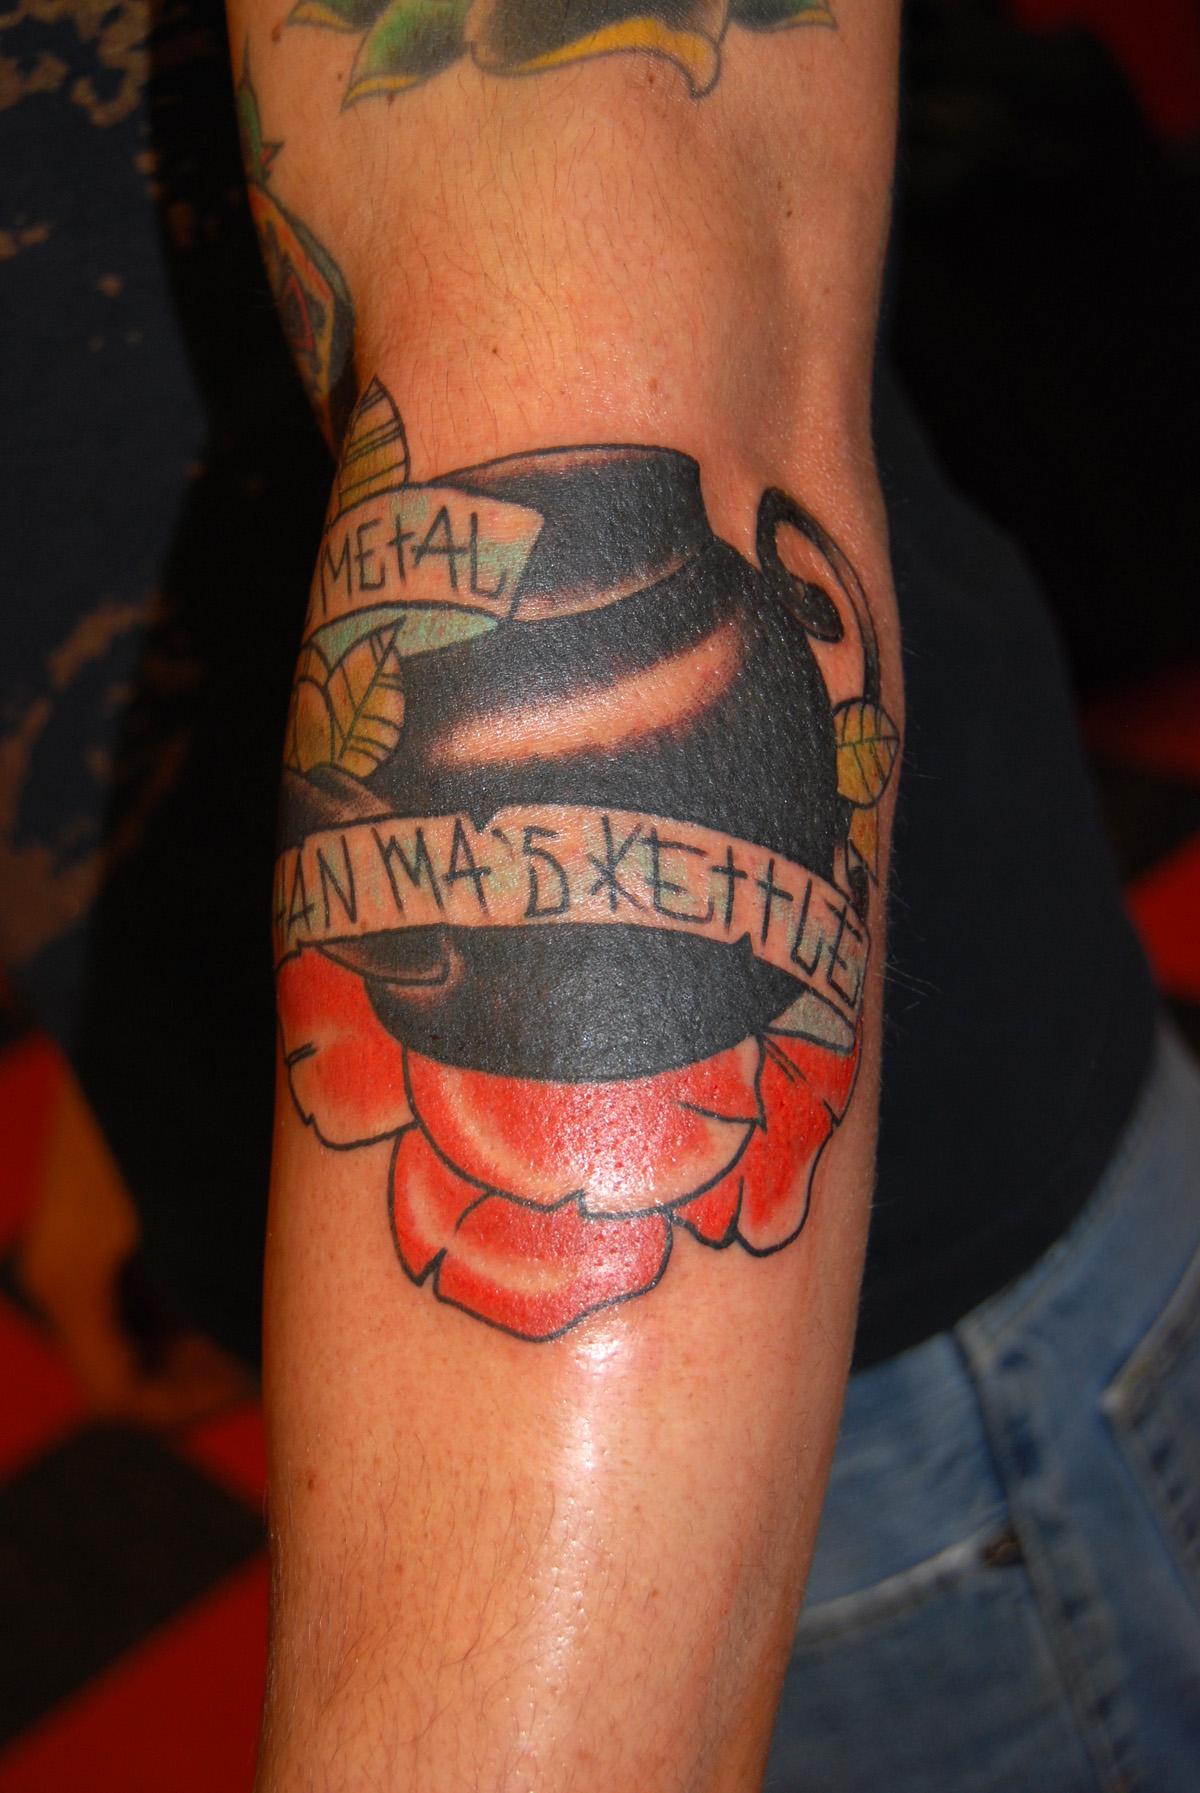 kettle tattoo